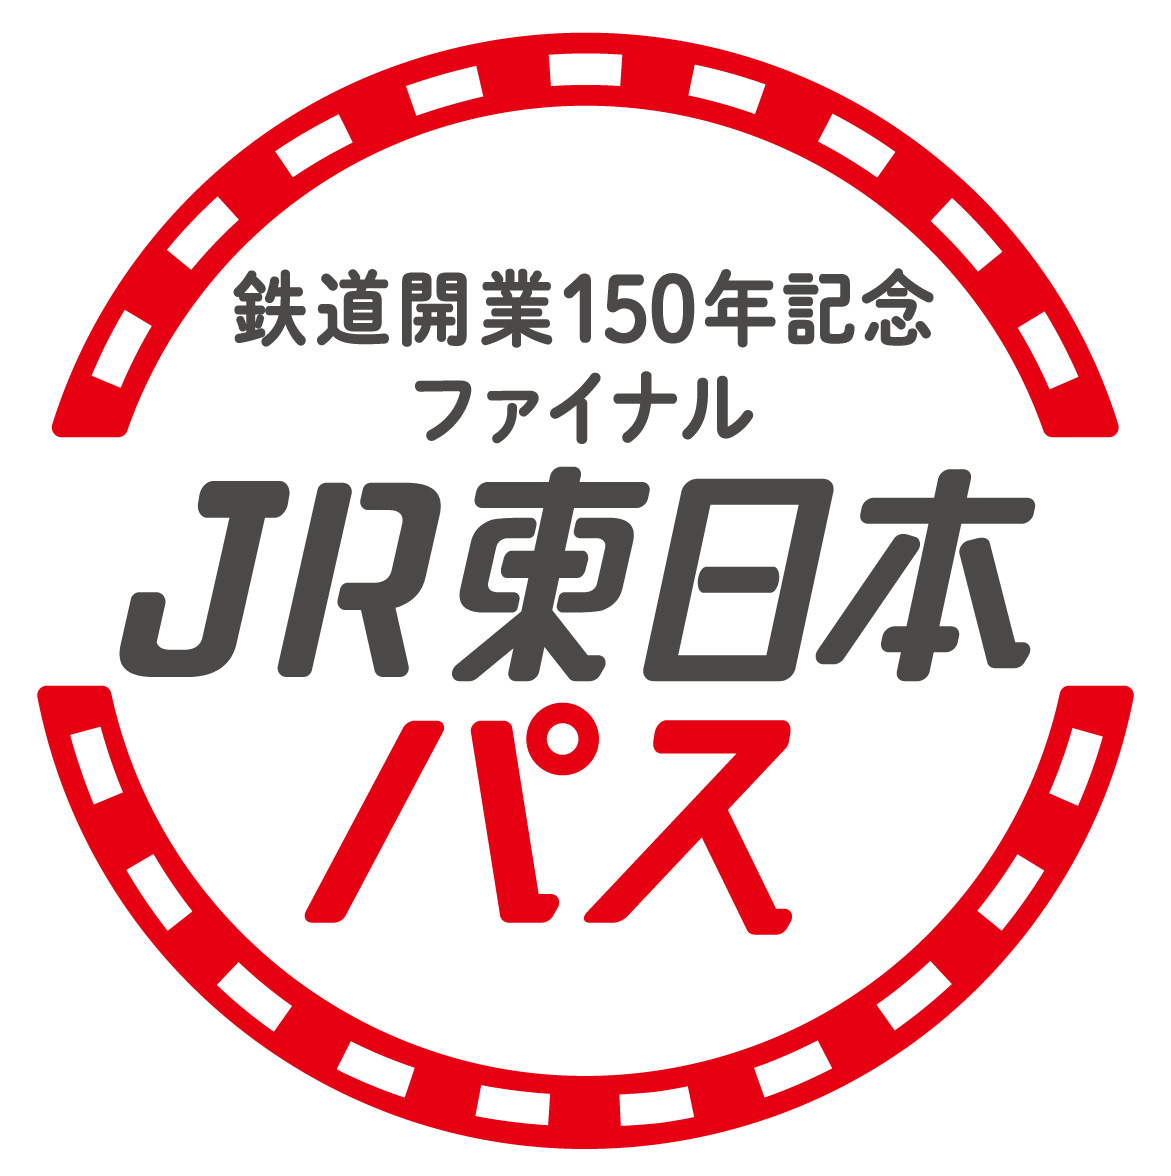 大好評につき「鉄道開業150年記念ファイナル ＪＲ東日本パス」を発売します！